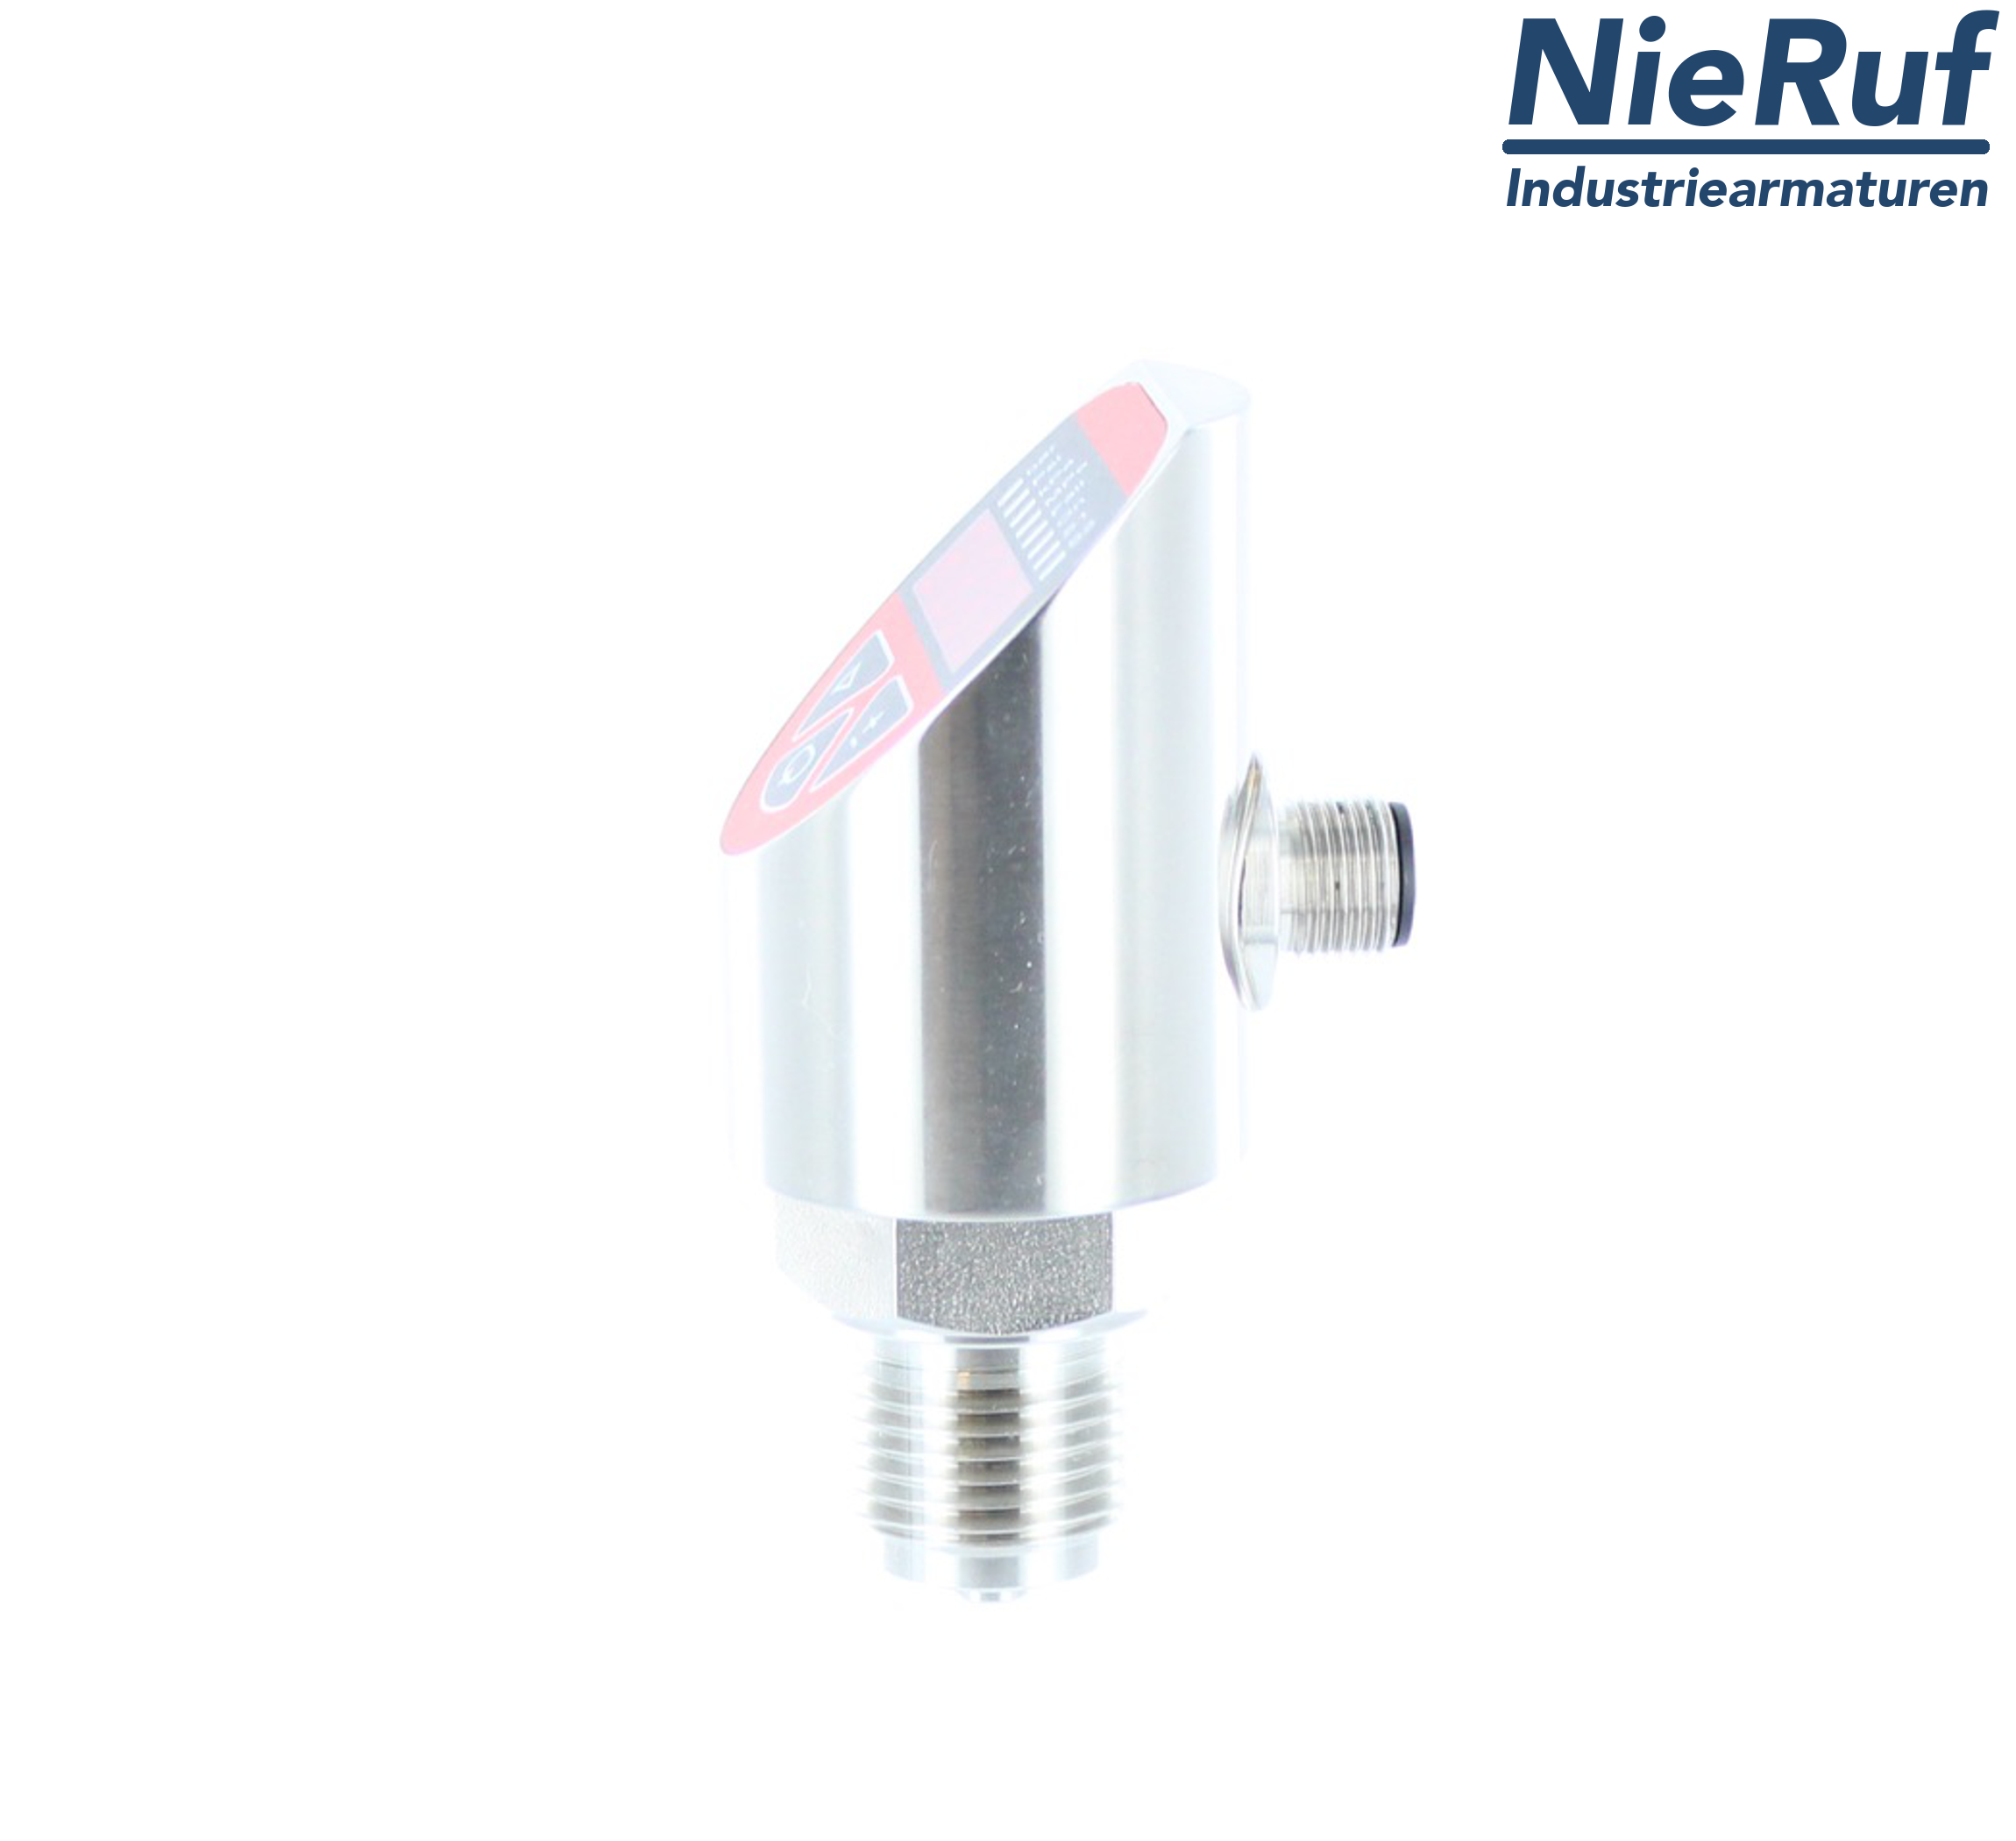 digital pressure sensor G 1/2" B 5-wire: 2xPNP, 1x4 - 20mA FPM 0,0 - 0,25 bar